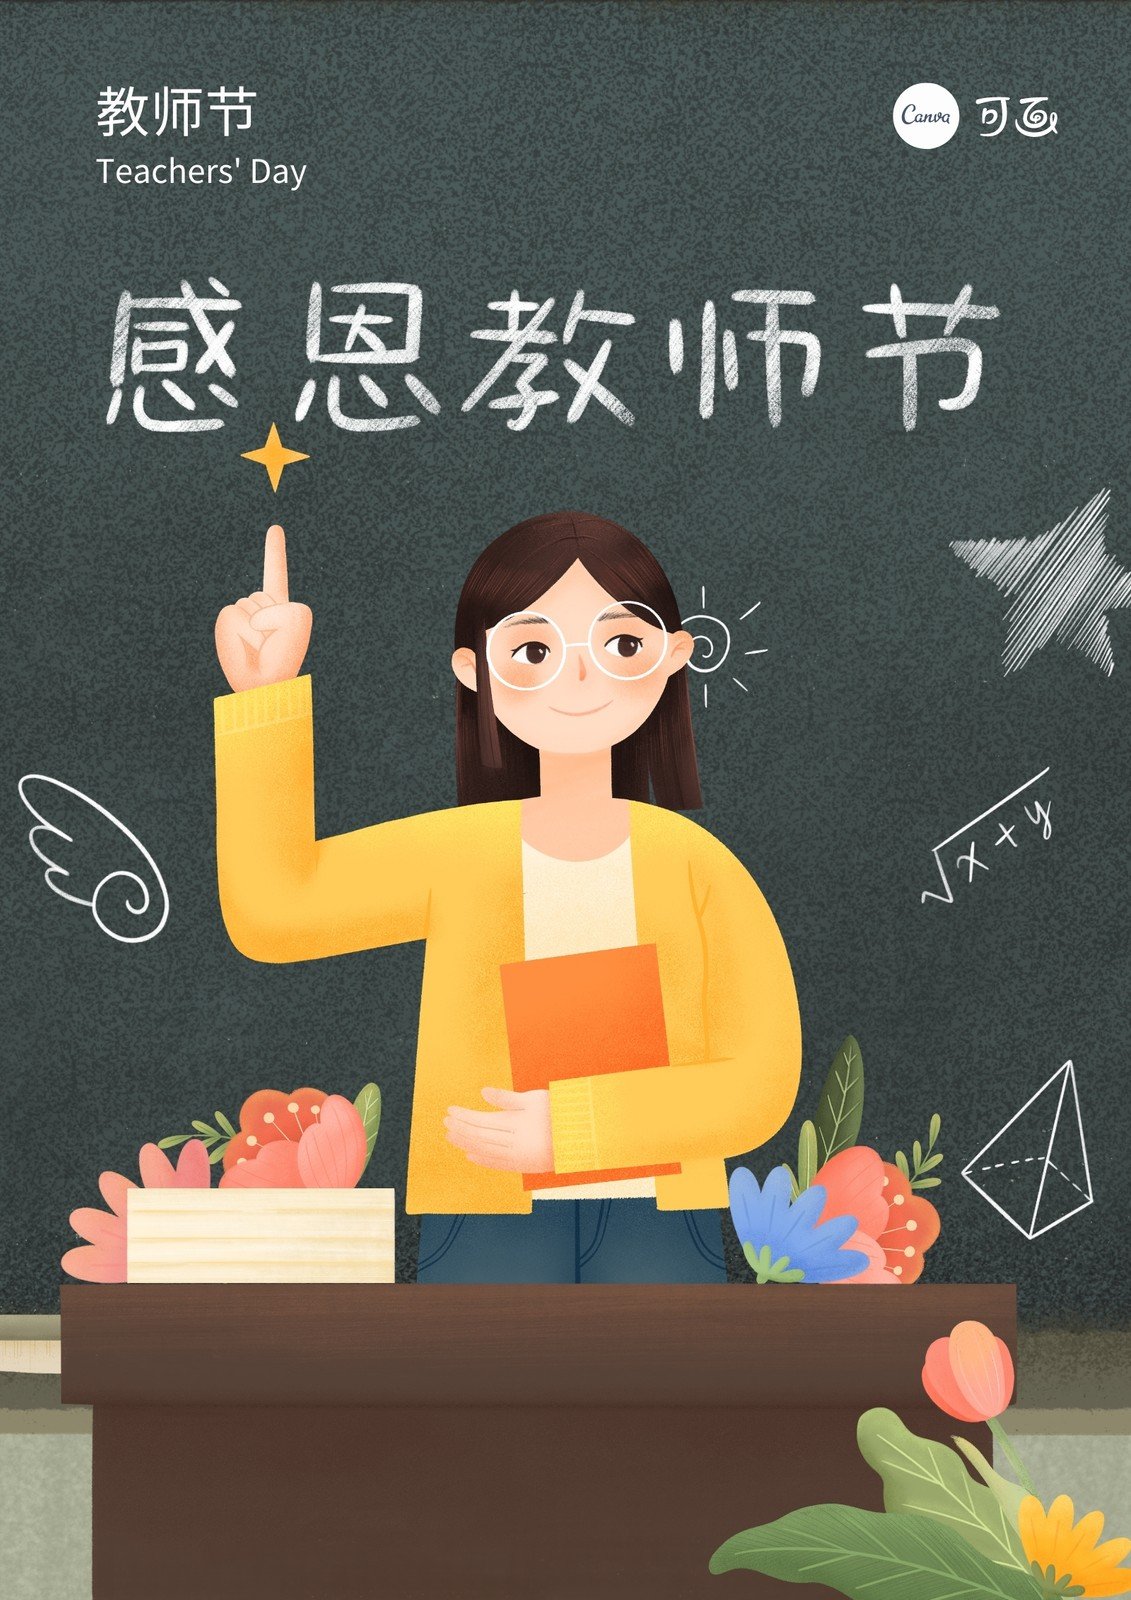 绿橙色老师学生黑板卡通教师节广告宣传中文海报 - 模板 - Canva可画